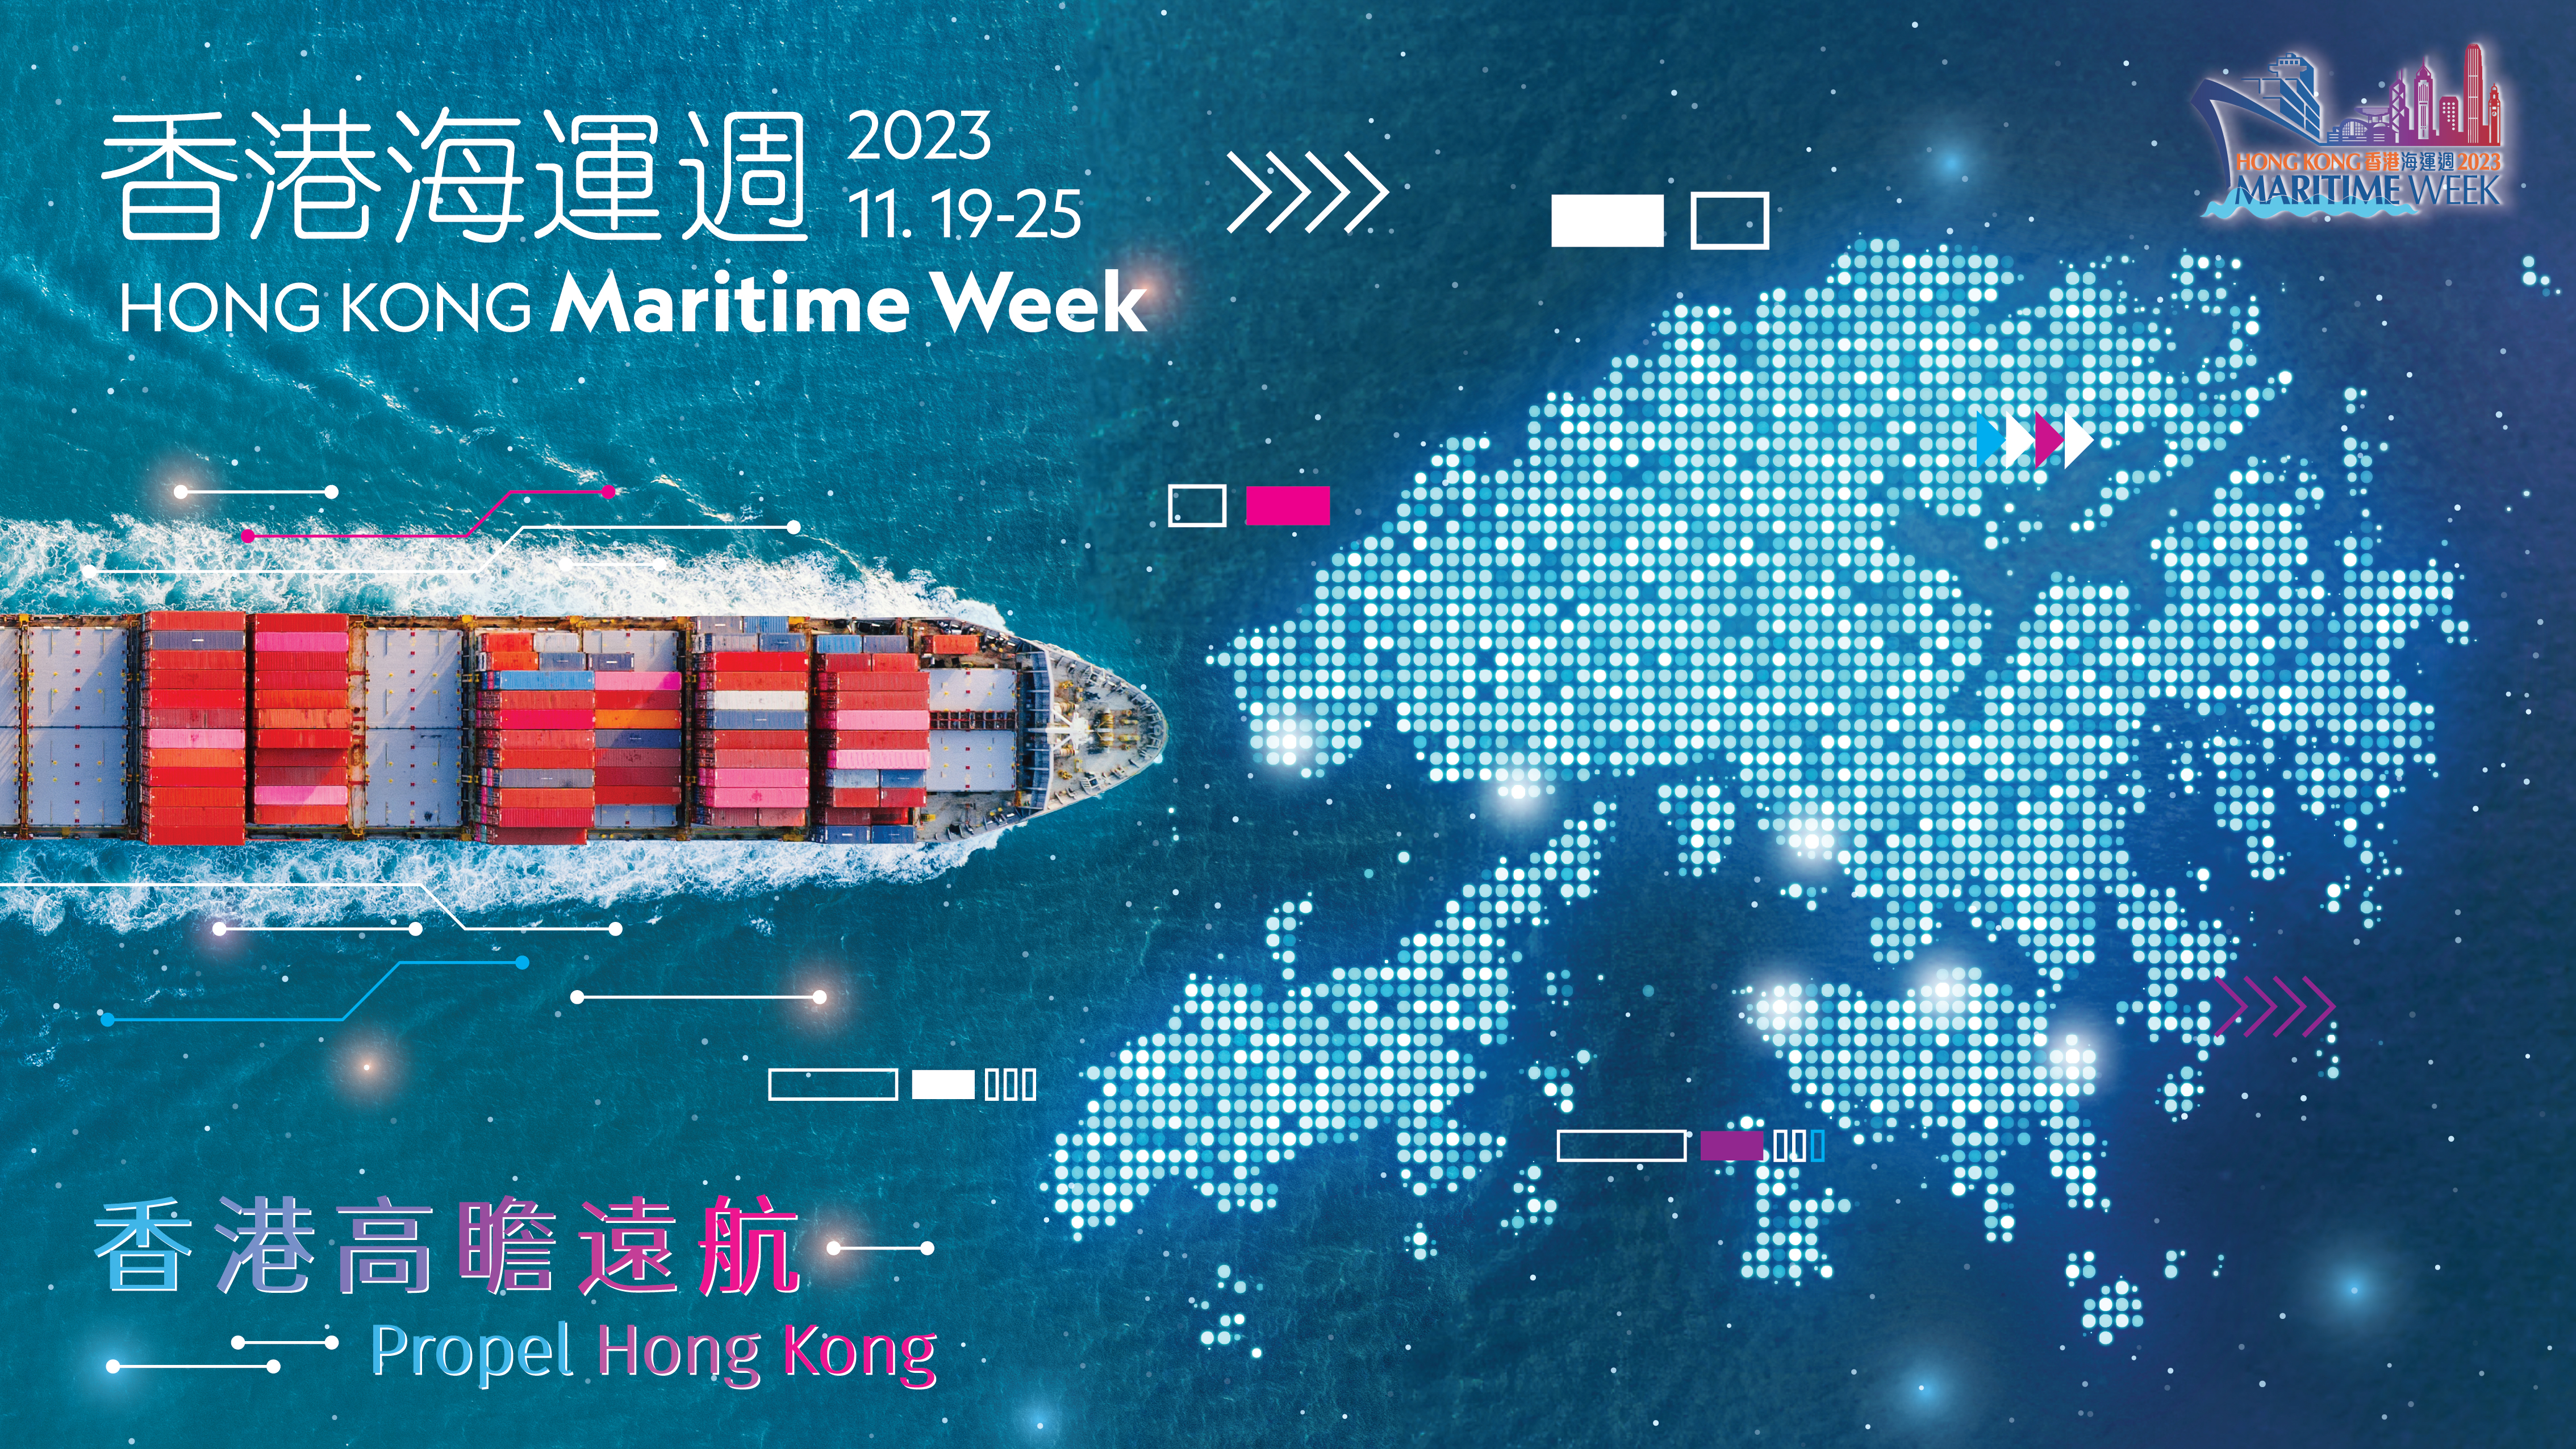 Hong Kong Maritime Week 2023 - Opening Ceremony cum 3rd World Maritime Merchants Forum